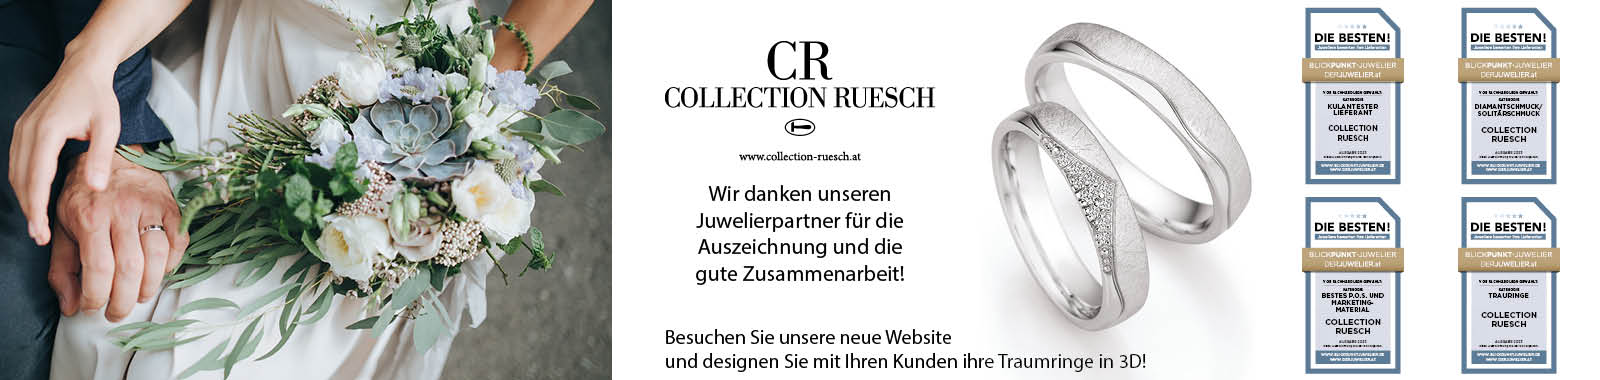 Collection_Ruesch_TOP_DIE_BESTEN_Banner 1600x380 px